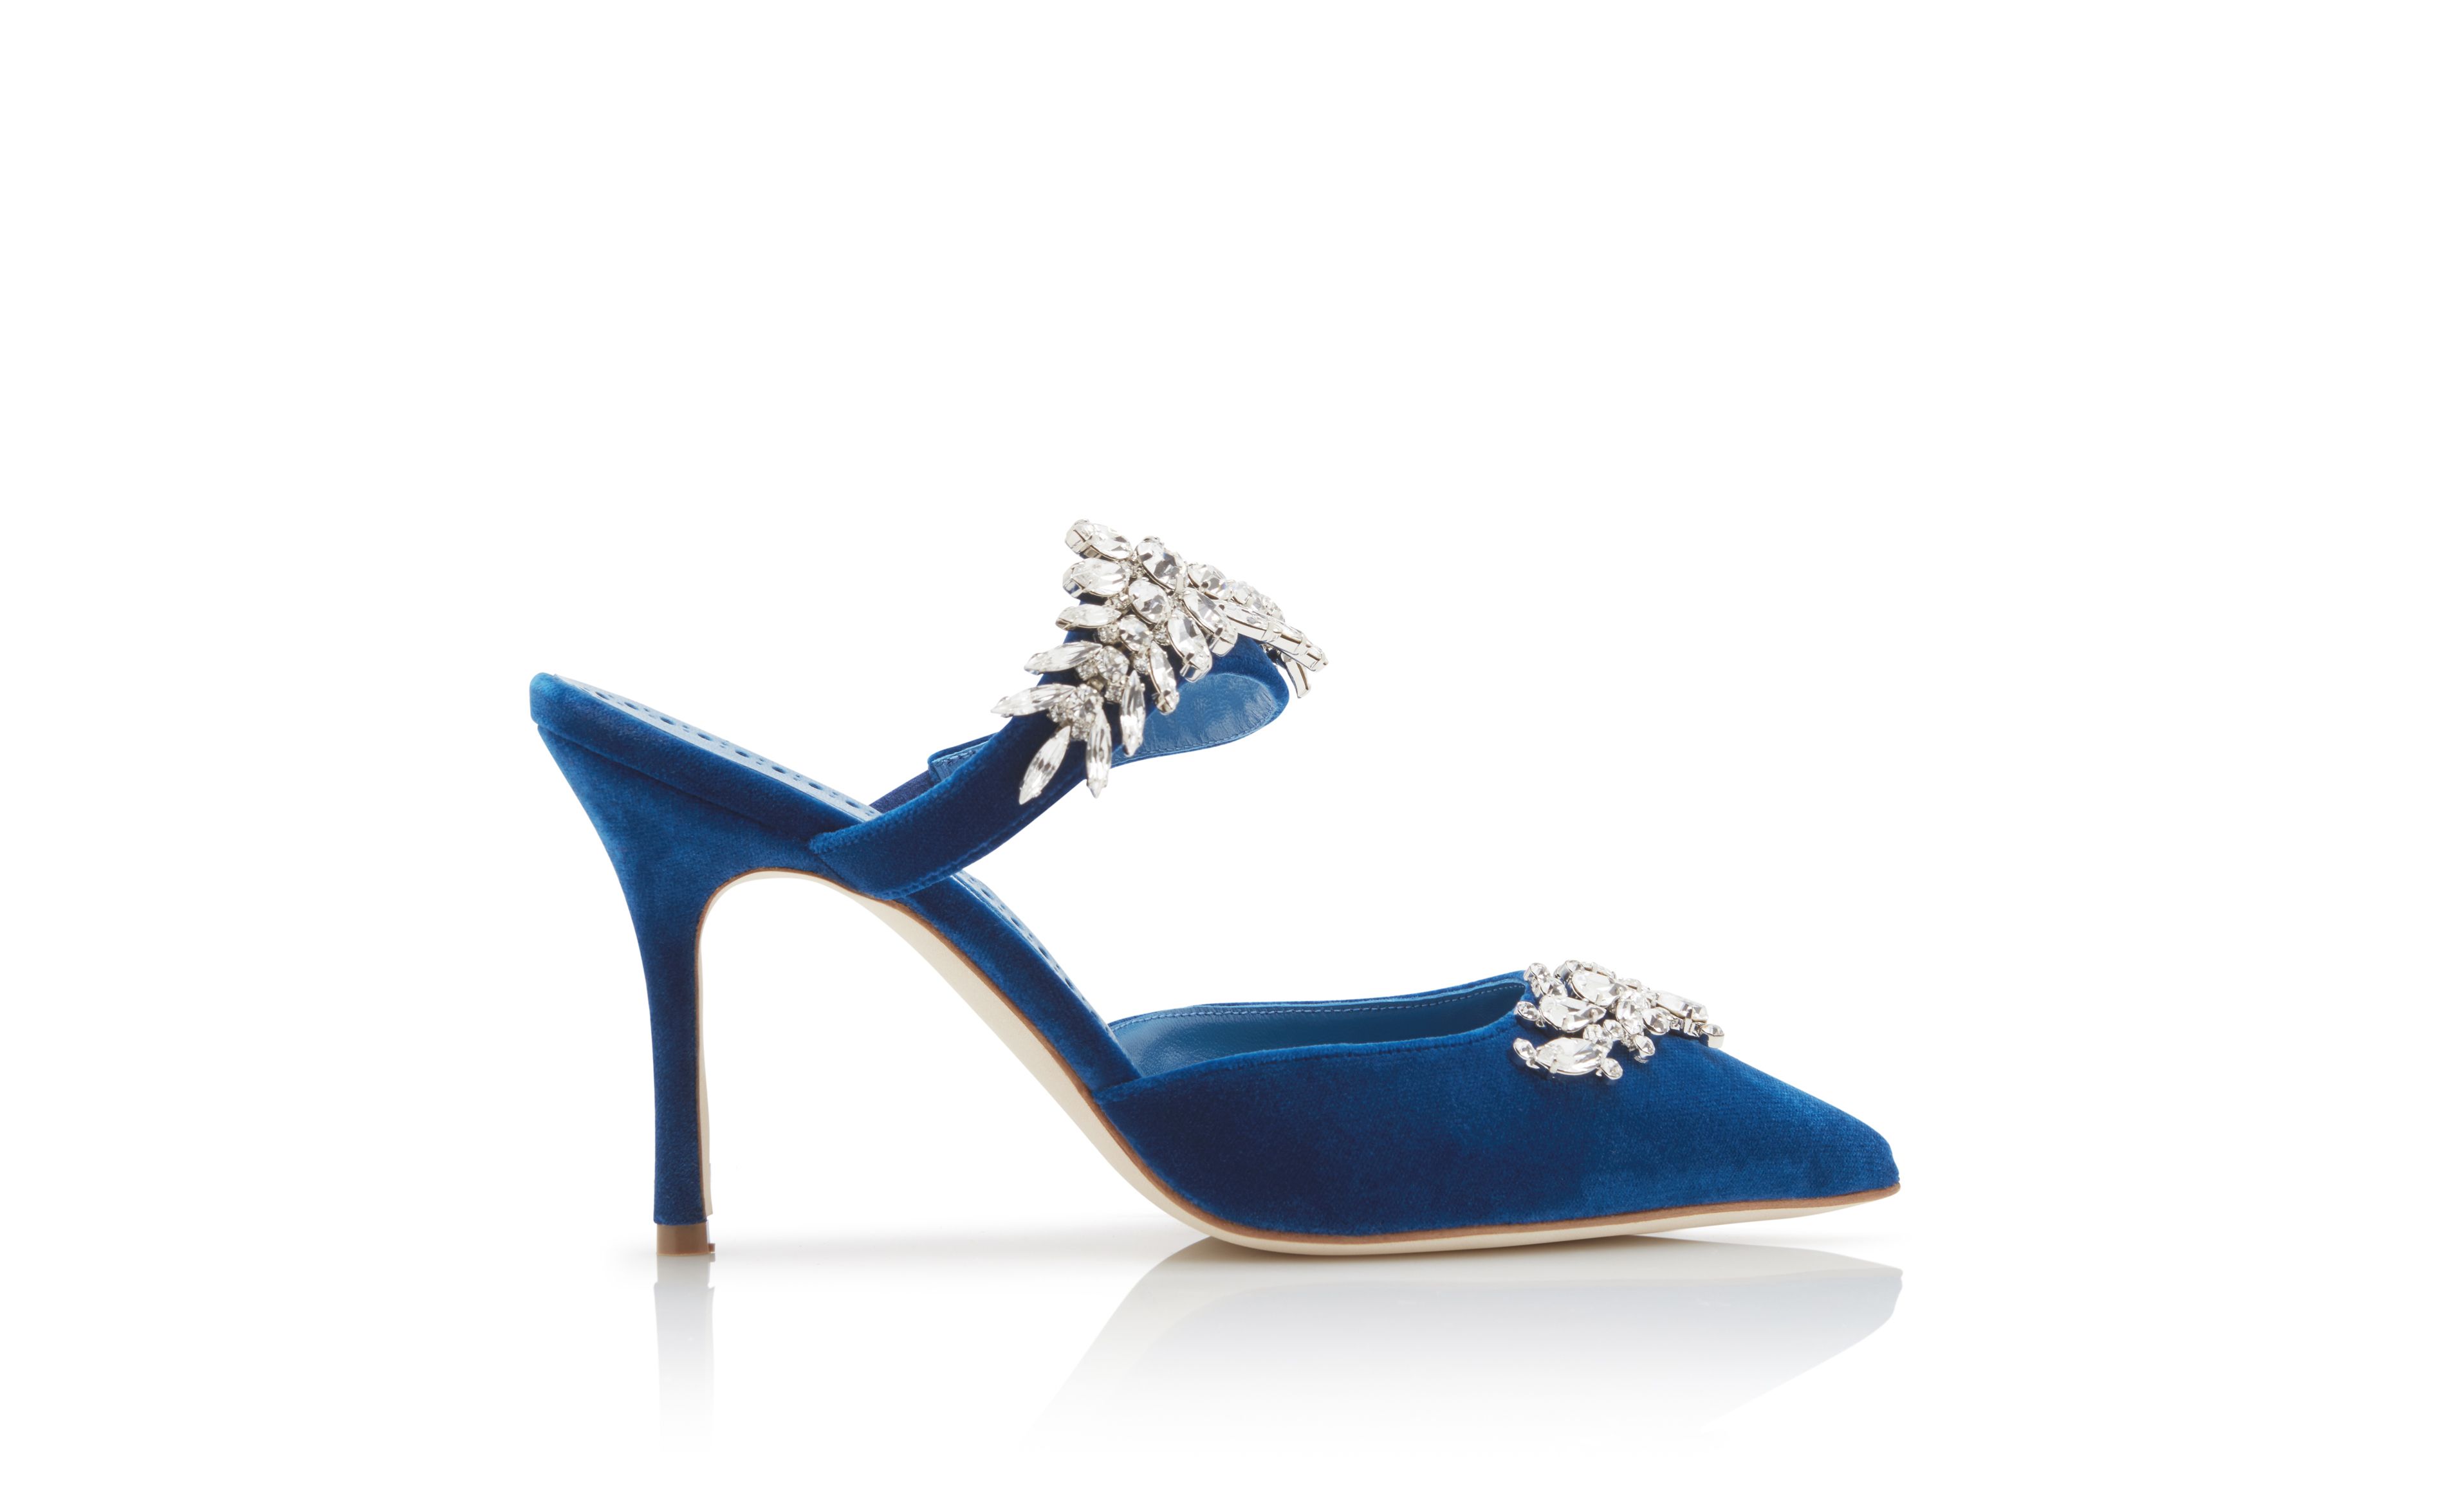 Designer Bright Blue Velvet Crystal Embellished Mules - Image Side View